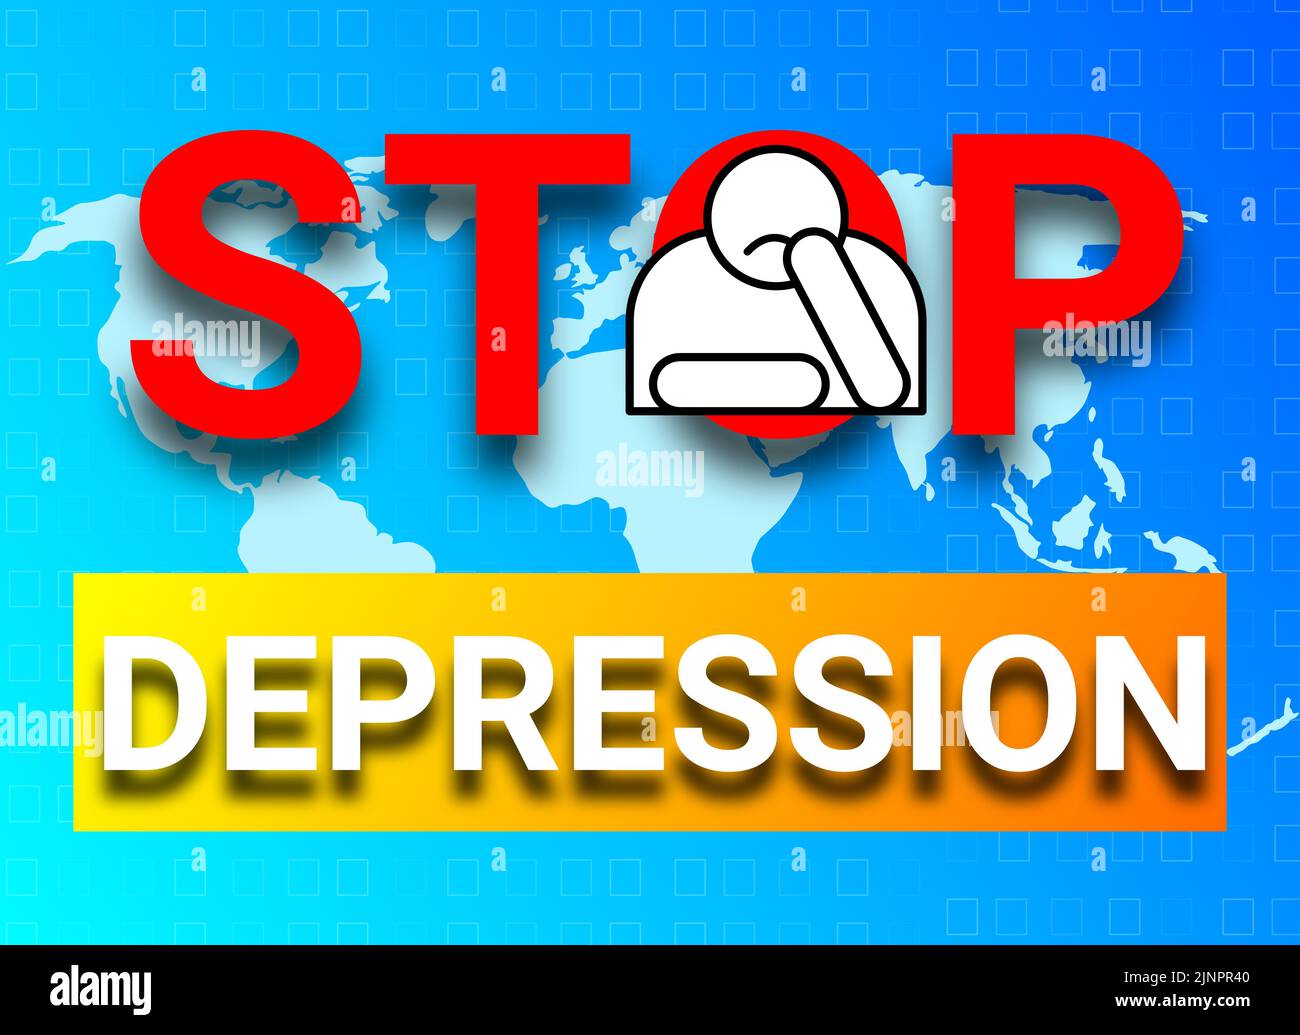 Image d'illustration de l'arrêt de la dépression sur la carte du monde et couleur gadiante bleue. Concept de soins médicaux. Banque D'Images